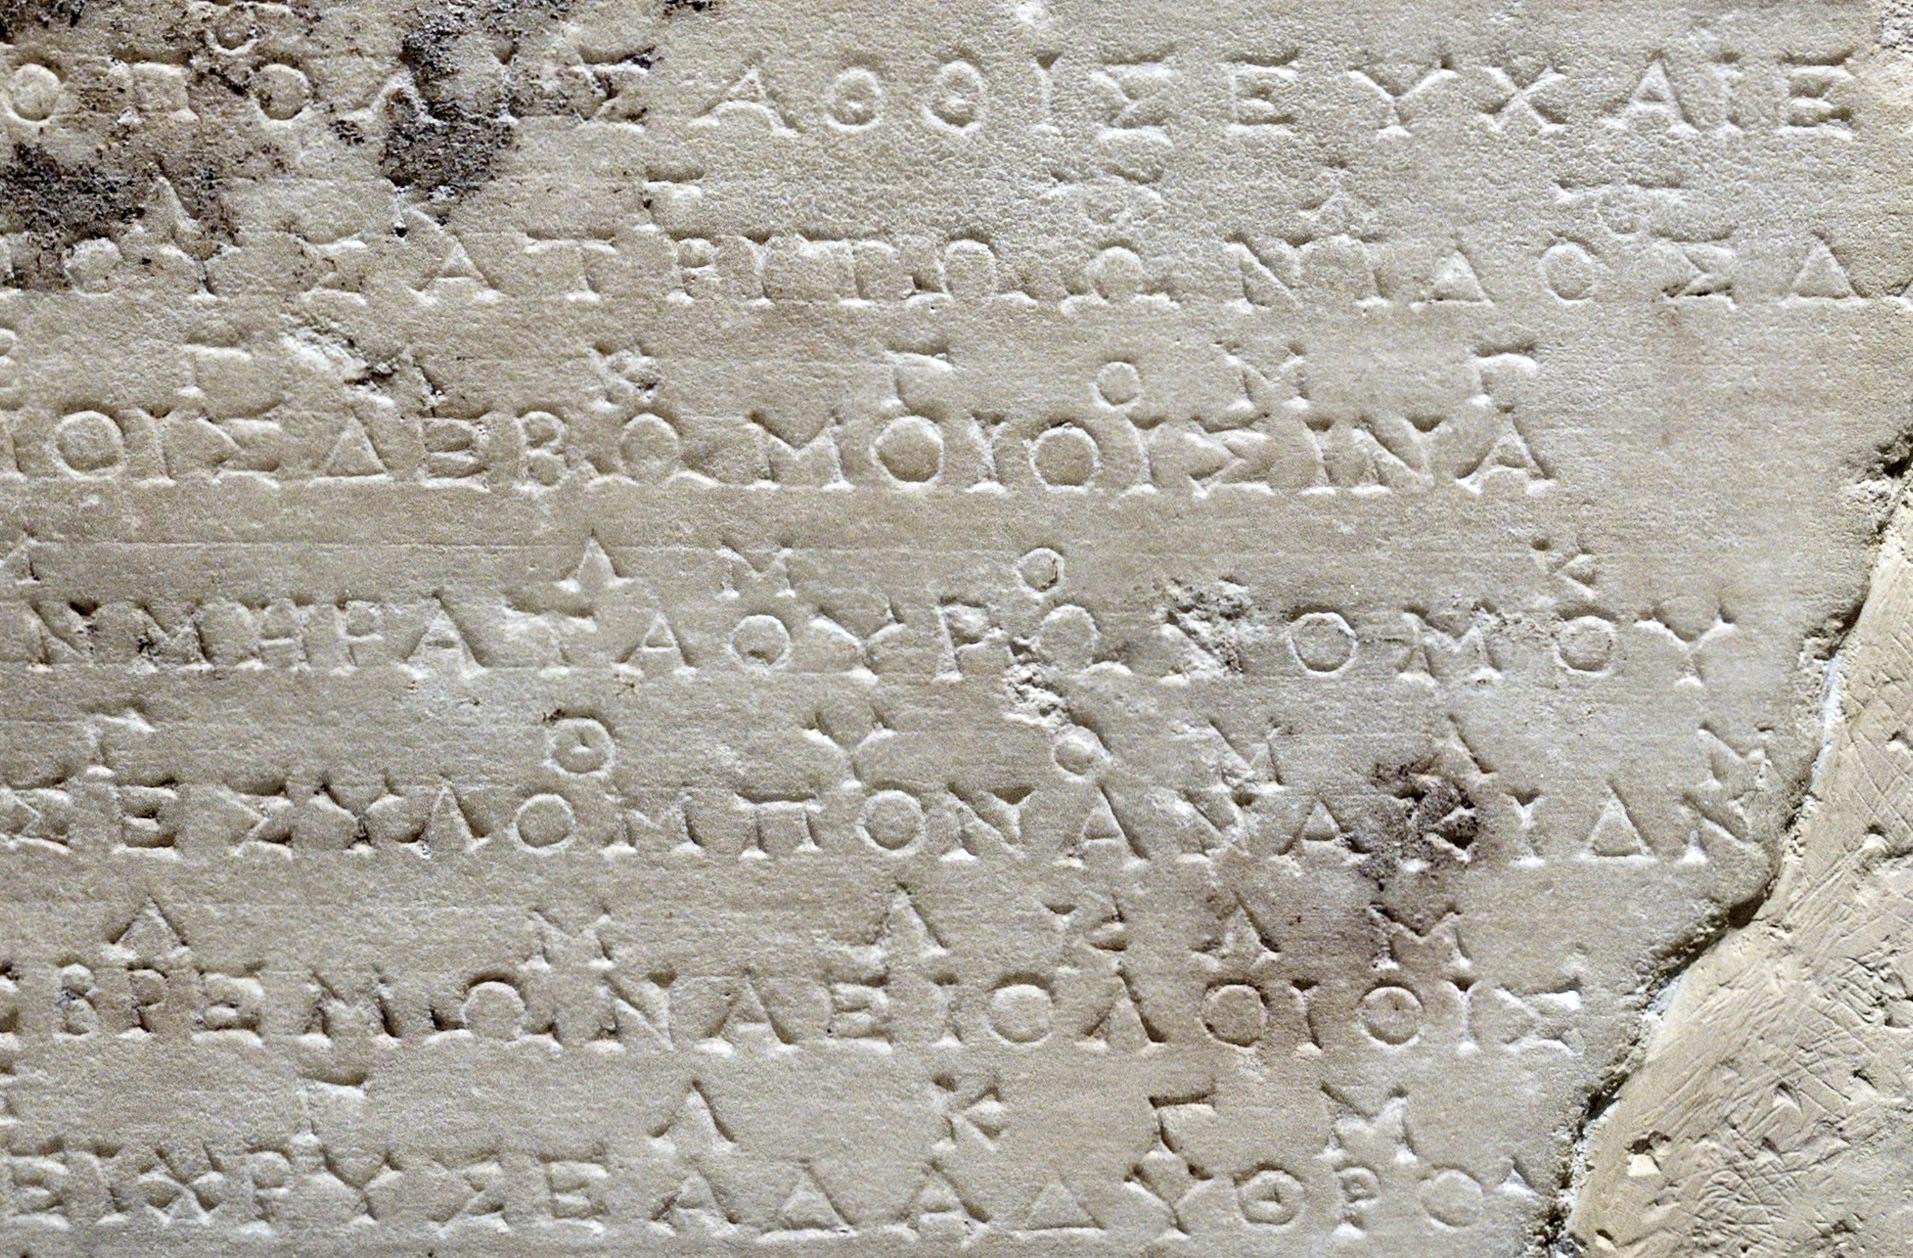 Παιάνας του Αθήναιου (λεπτομέρεια επιγραφής με Δελφικούς ύμνους στον Απόλλωνα, από τον Θησαυρό των Αθηναίων), Αρχαιολογικό Μουσείο Δελφών.